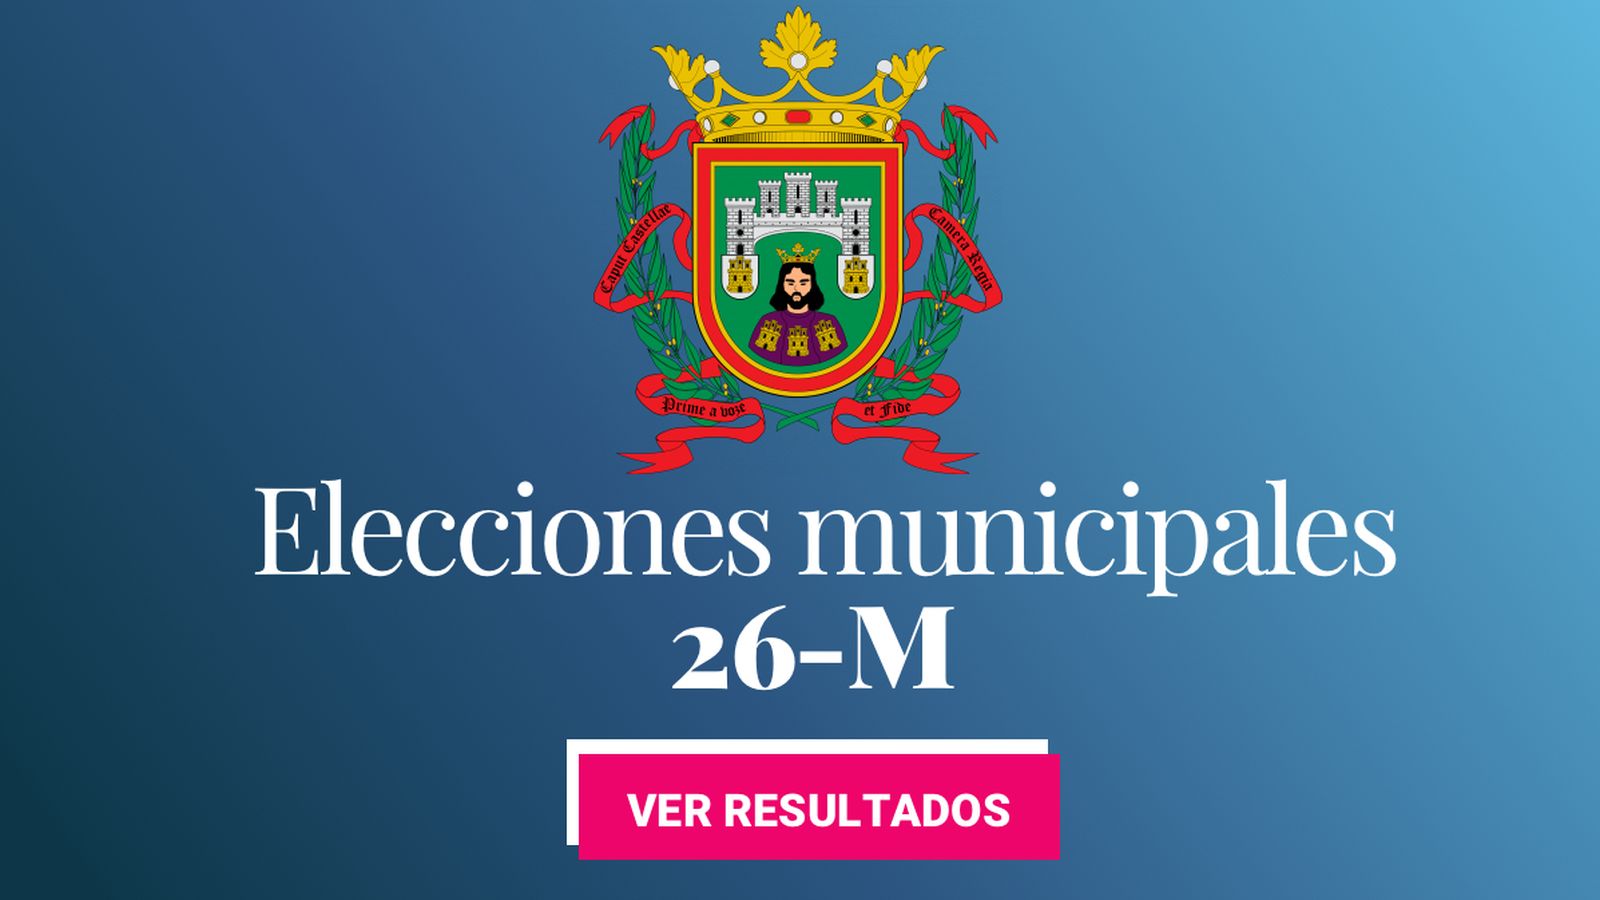 Foto: Elecciones municipales 2019 en Burgos. (C.C./EC)